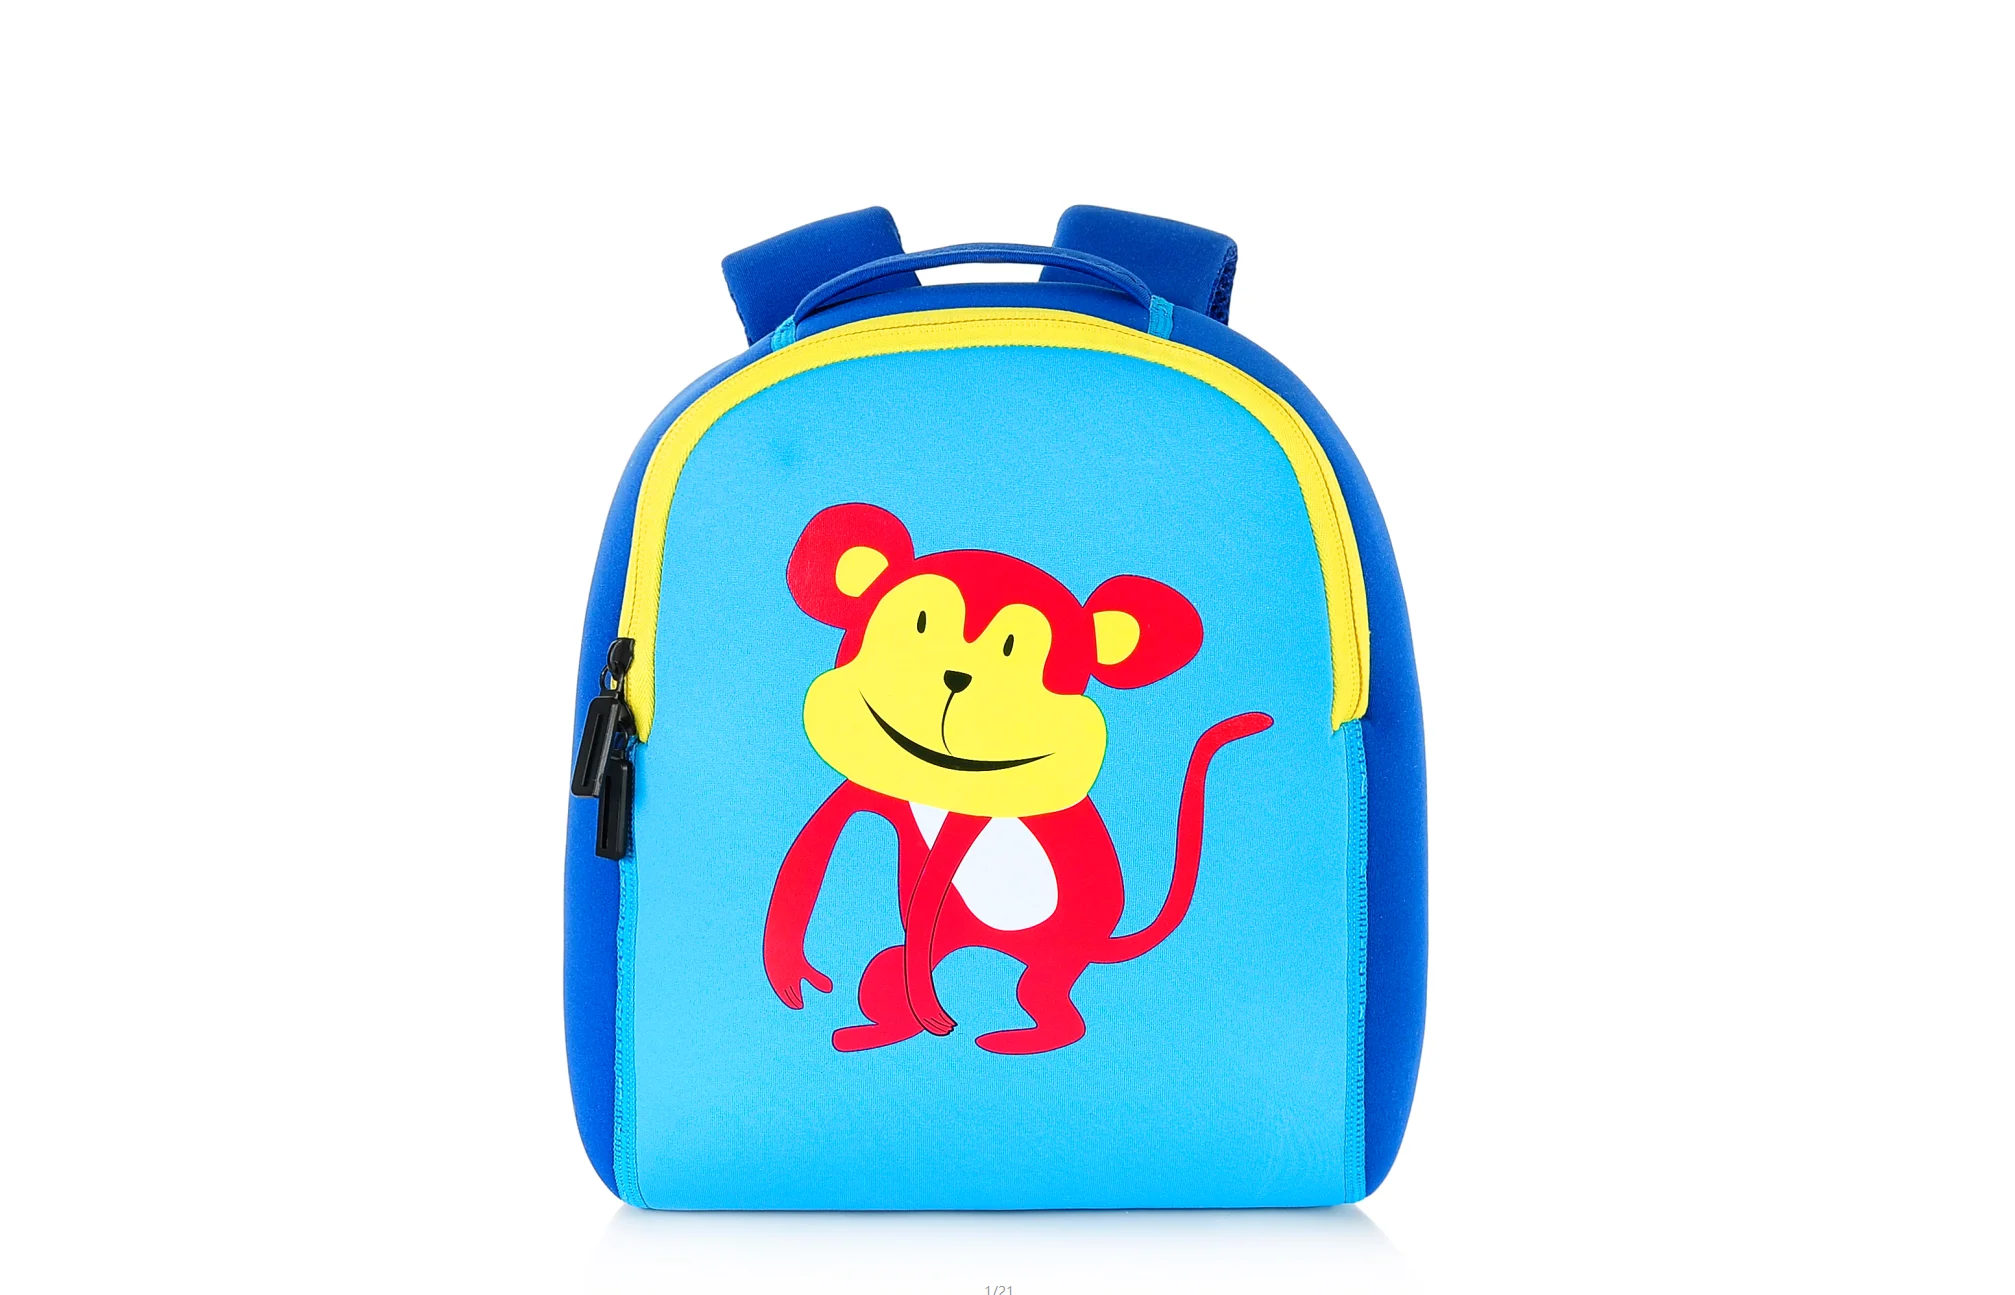 

Ульсветильник Кая сжатая сумка для раннего обучения, материал для дайвинга, сумка для детского сада, Детская сумка, симпатичная мультяшная ...